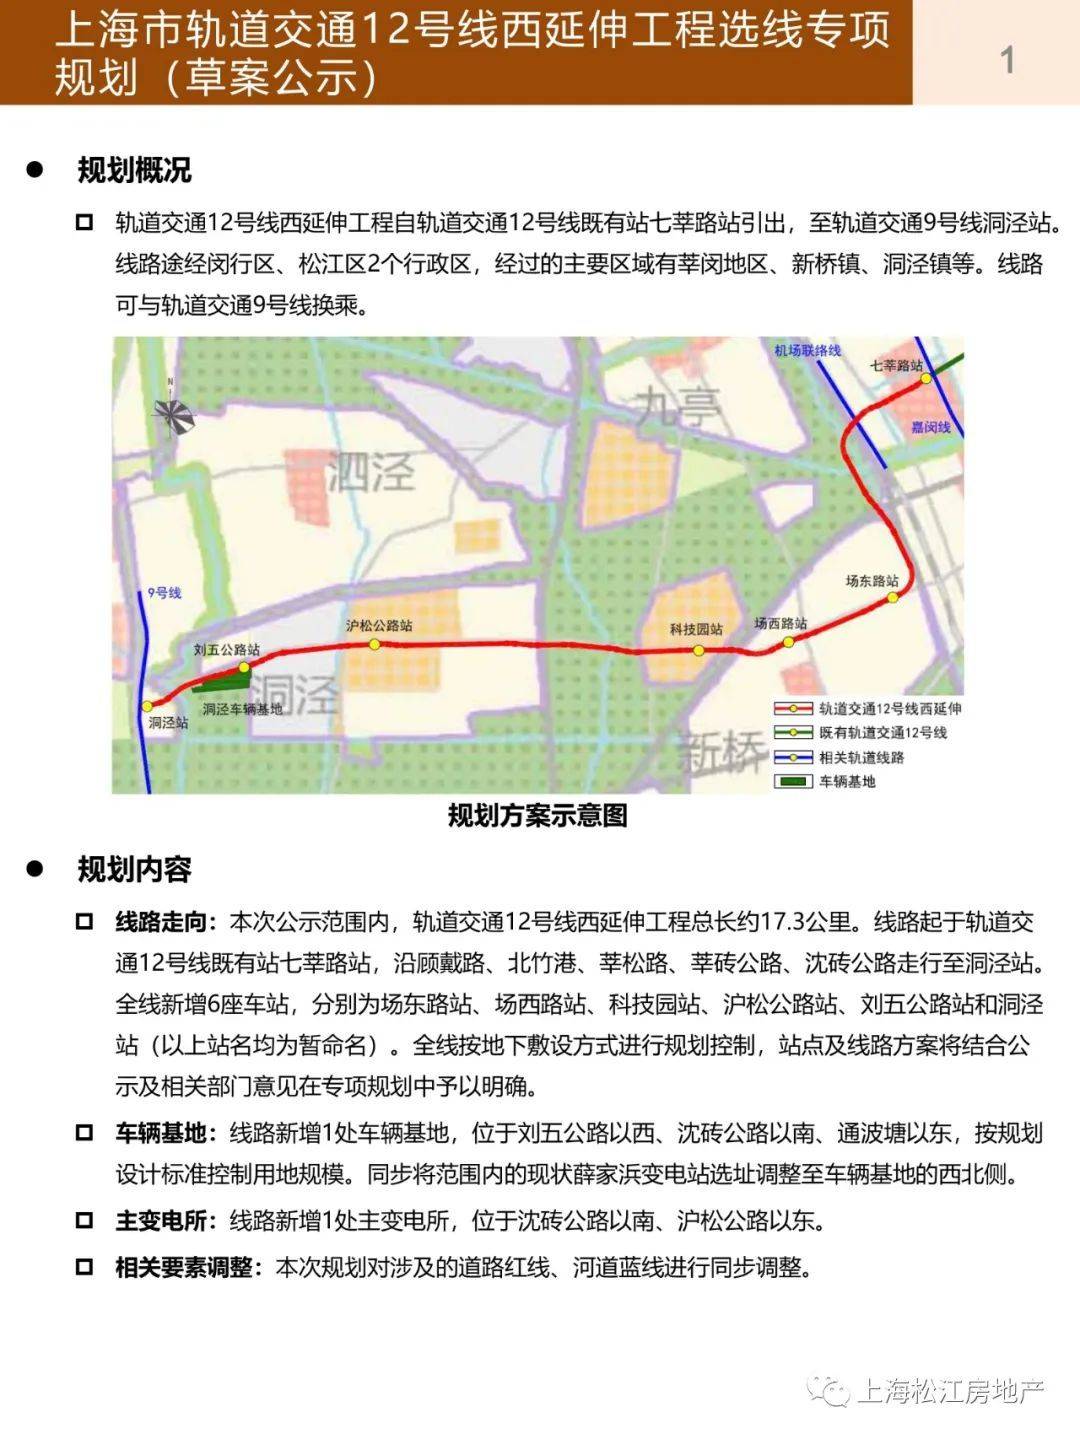 上海市轨道交通12号线西延伸工程选线专项规划(草案公示)